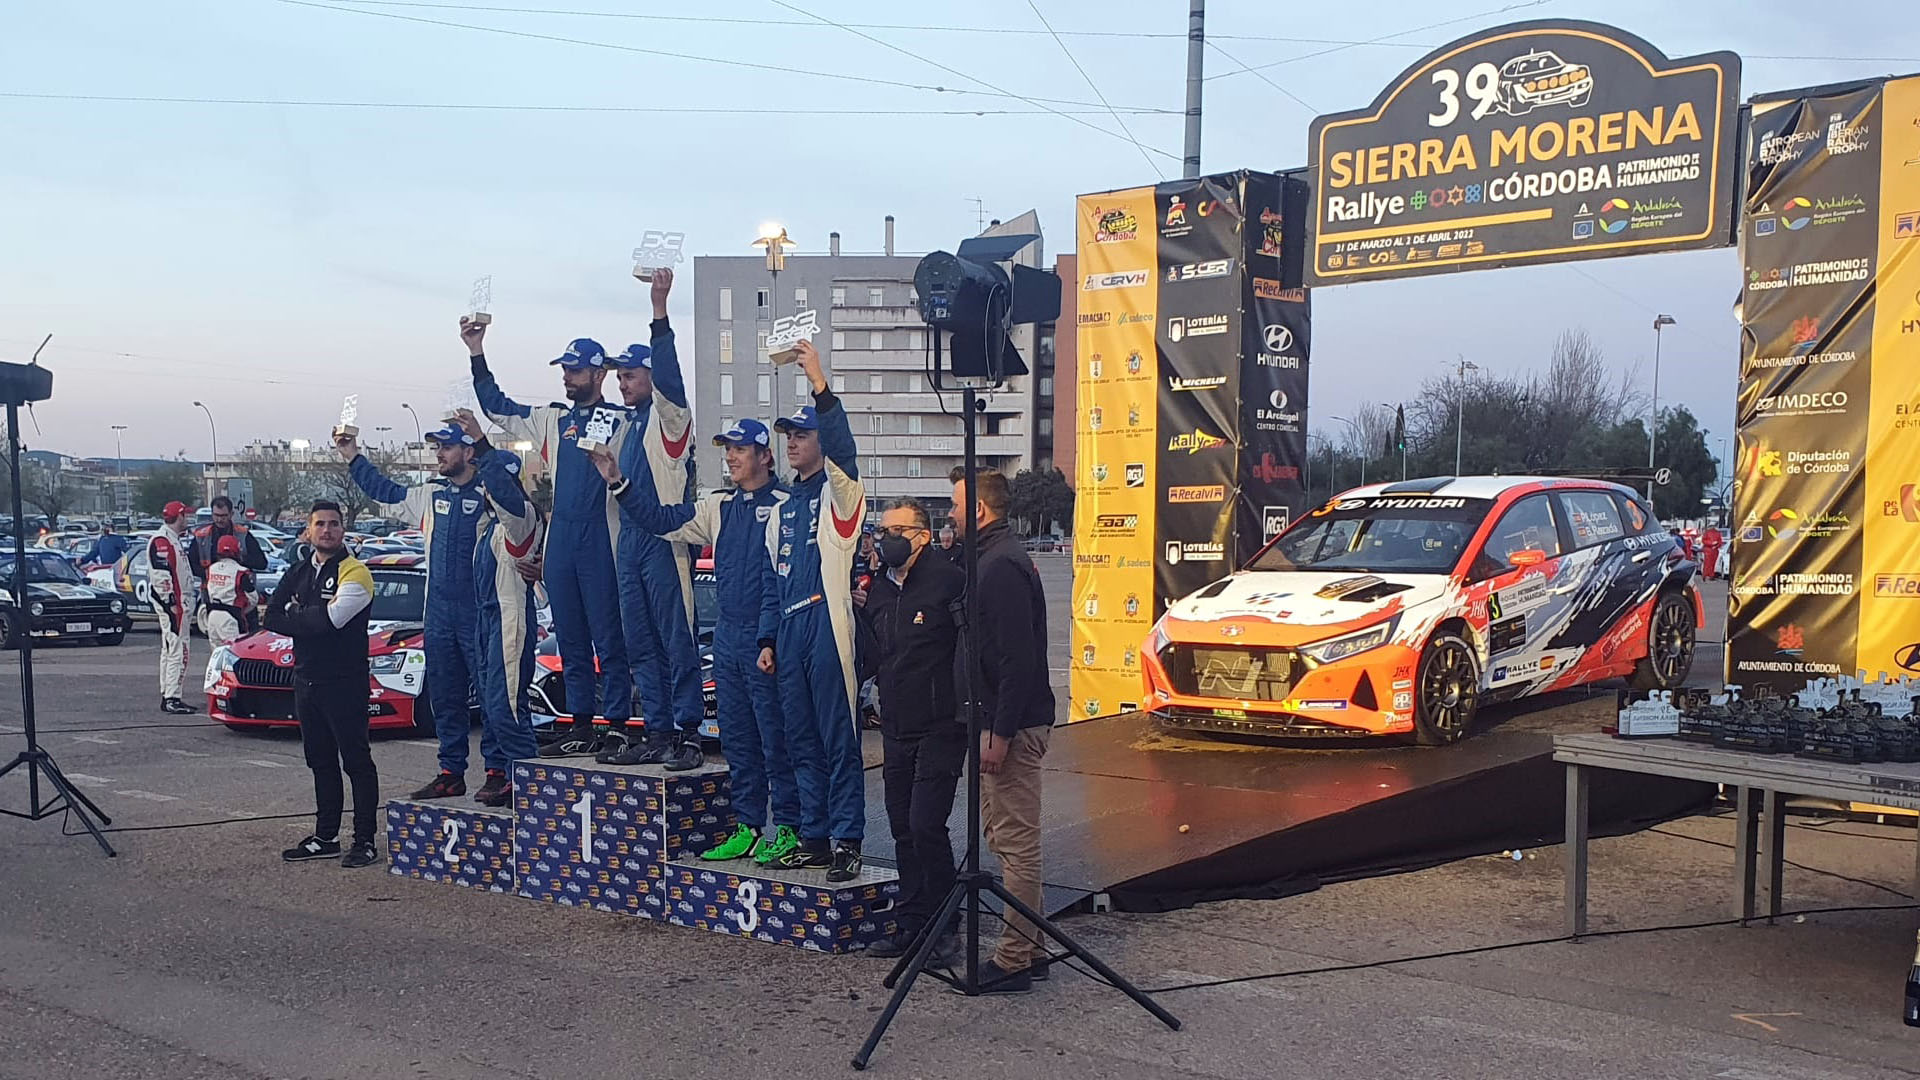 Los dos equipos del Rally Team Andalucía suben al podio en el 39 Rally Sierra Morena